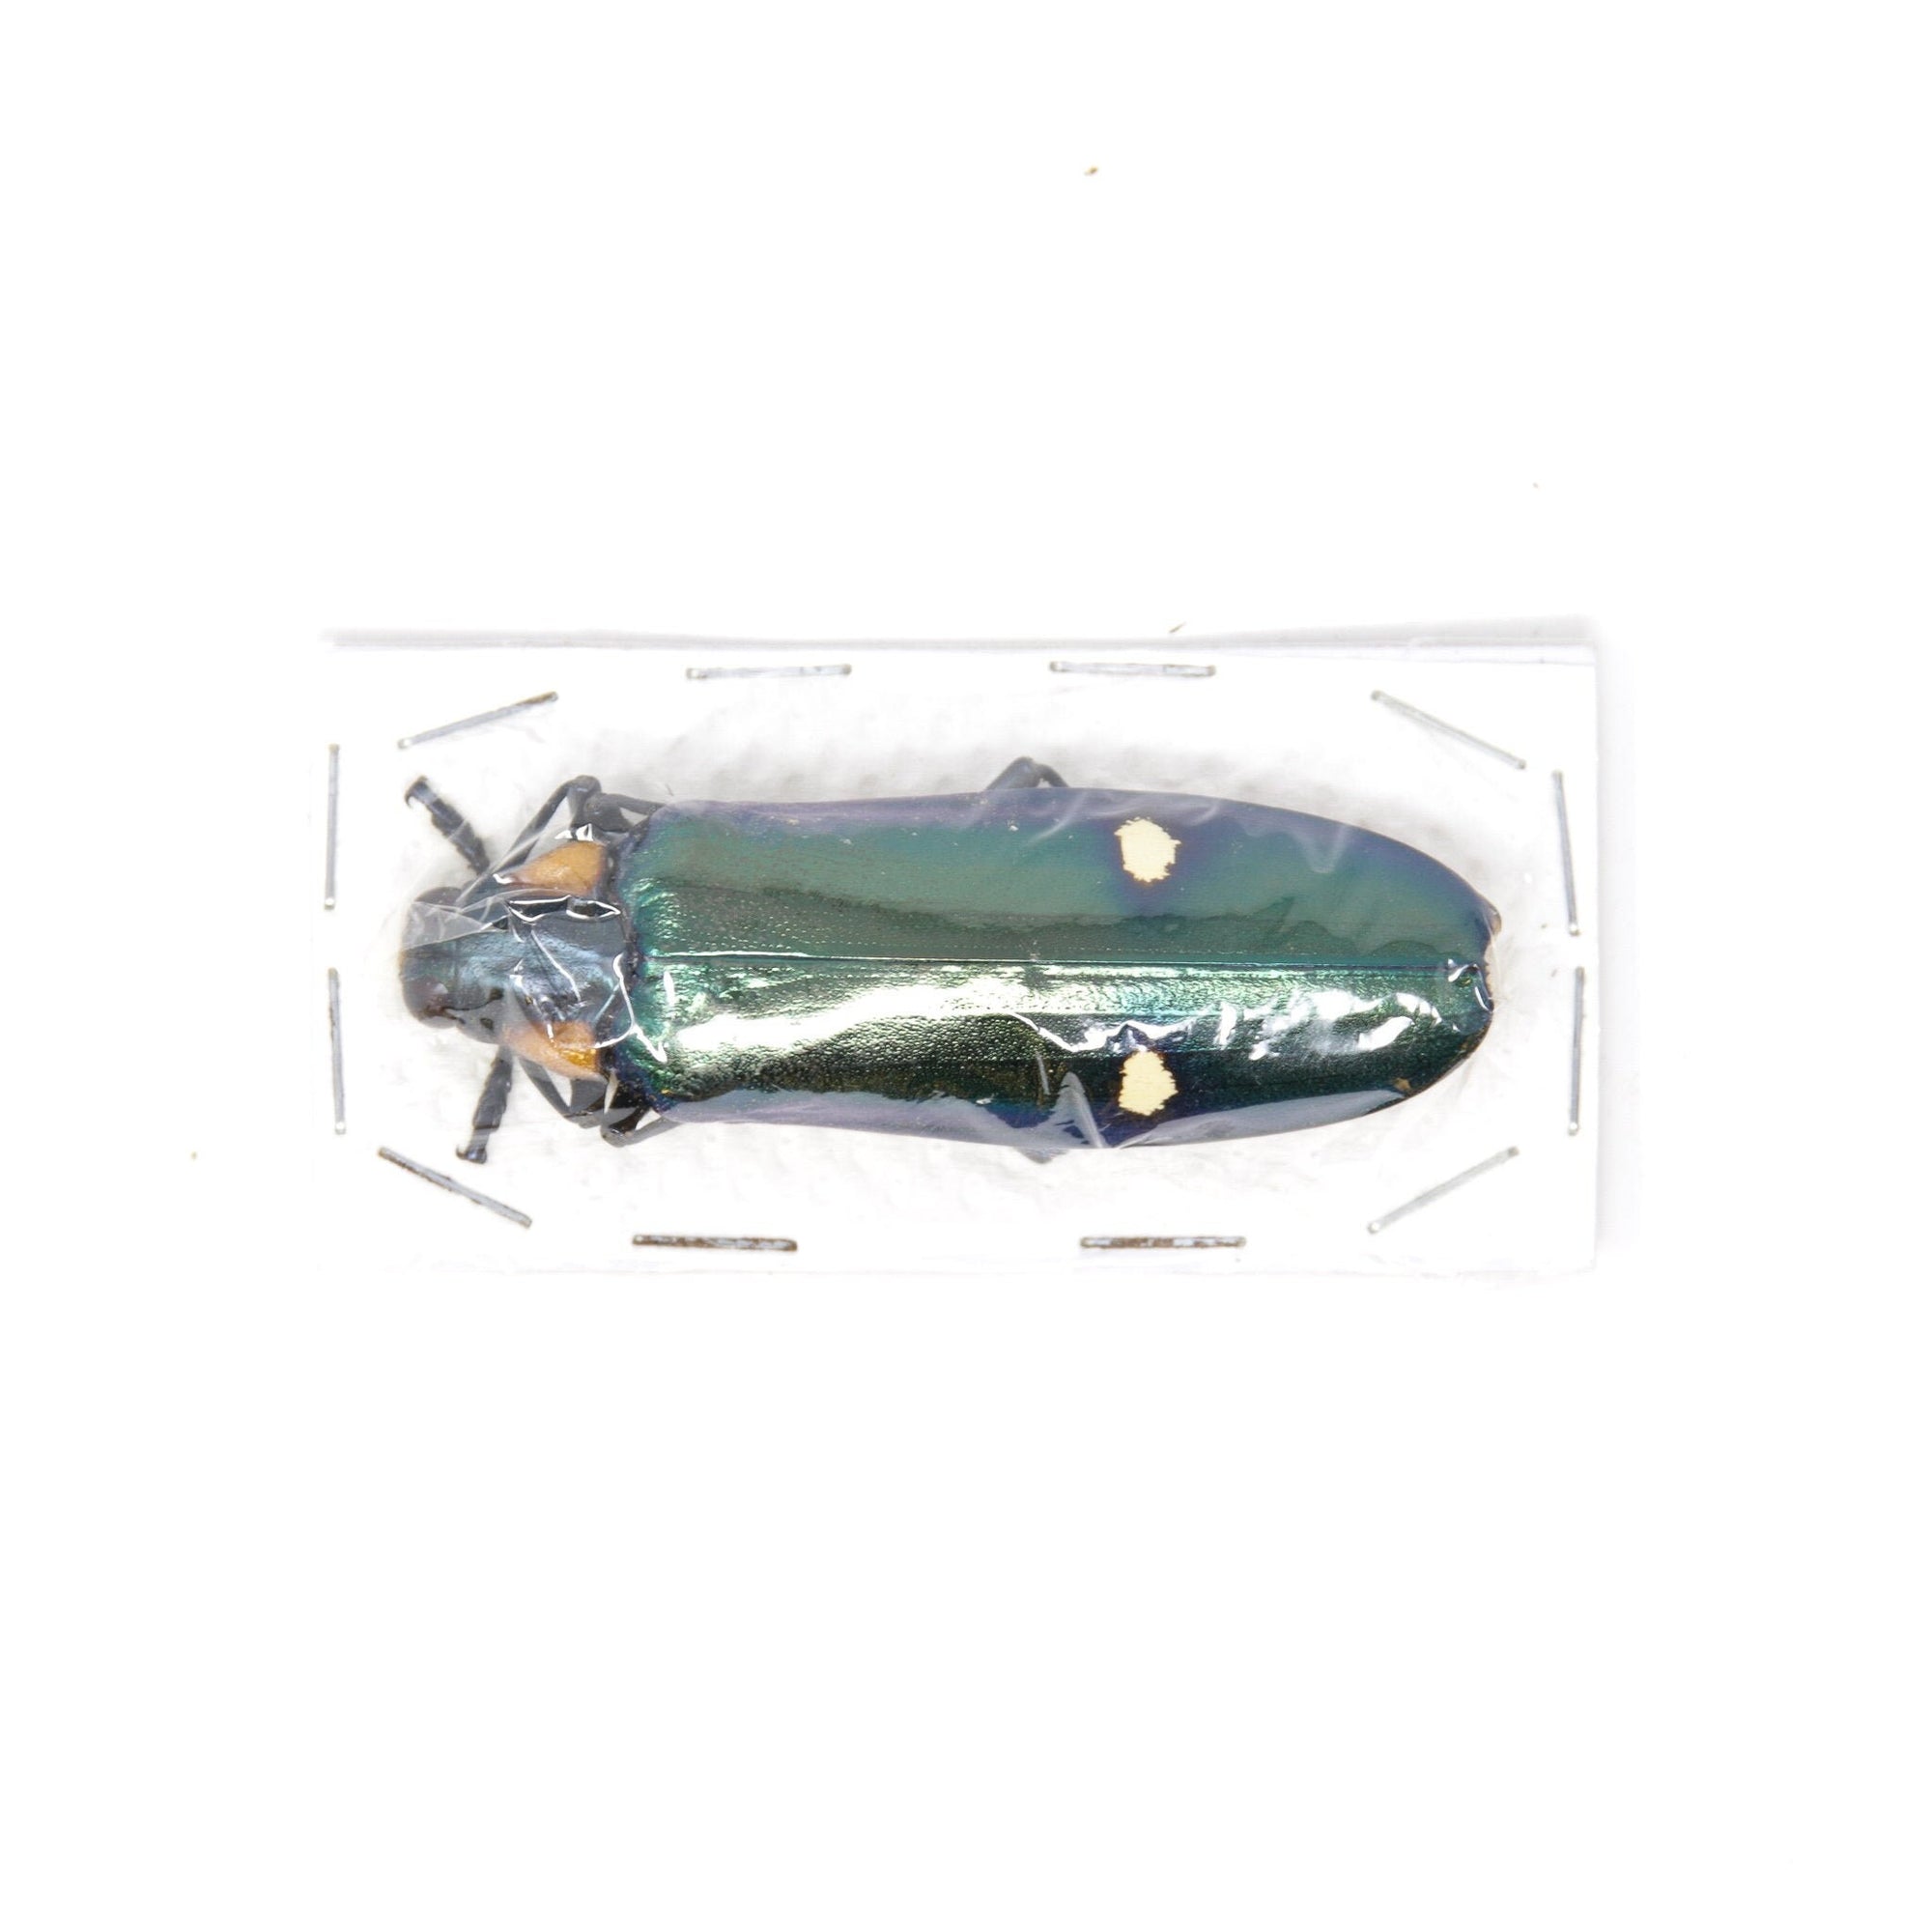 2 x Giant Metallic Jewel Beetles | Megaloxantha bicolor | A1 Entomology Specimens